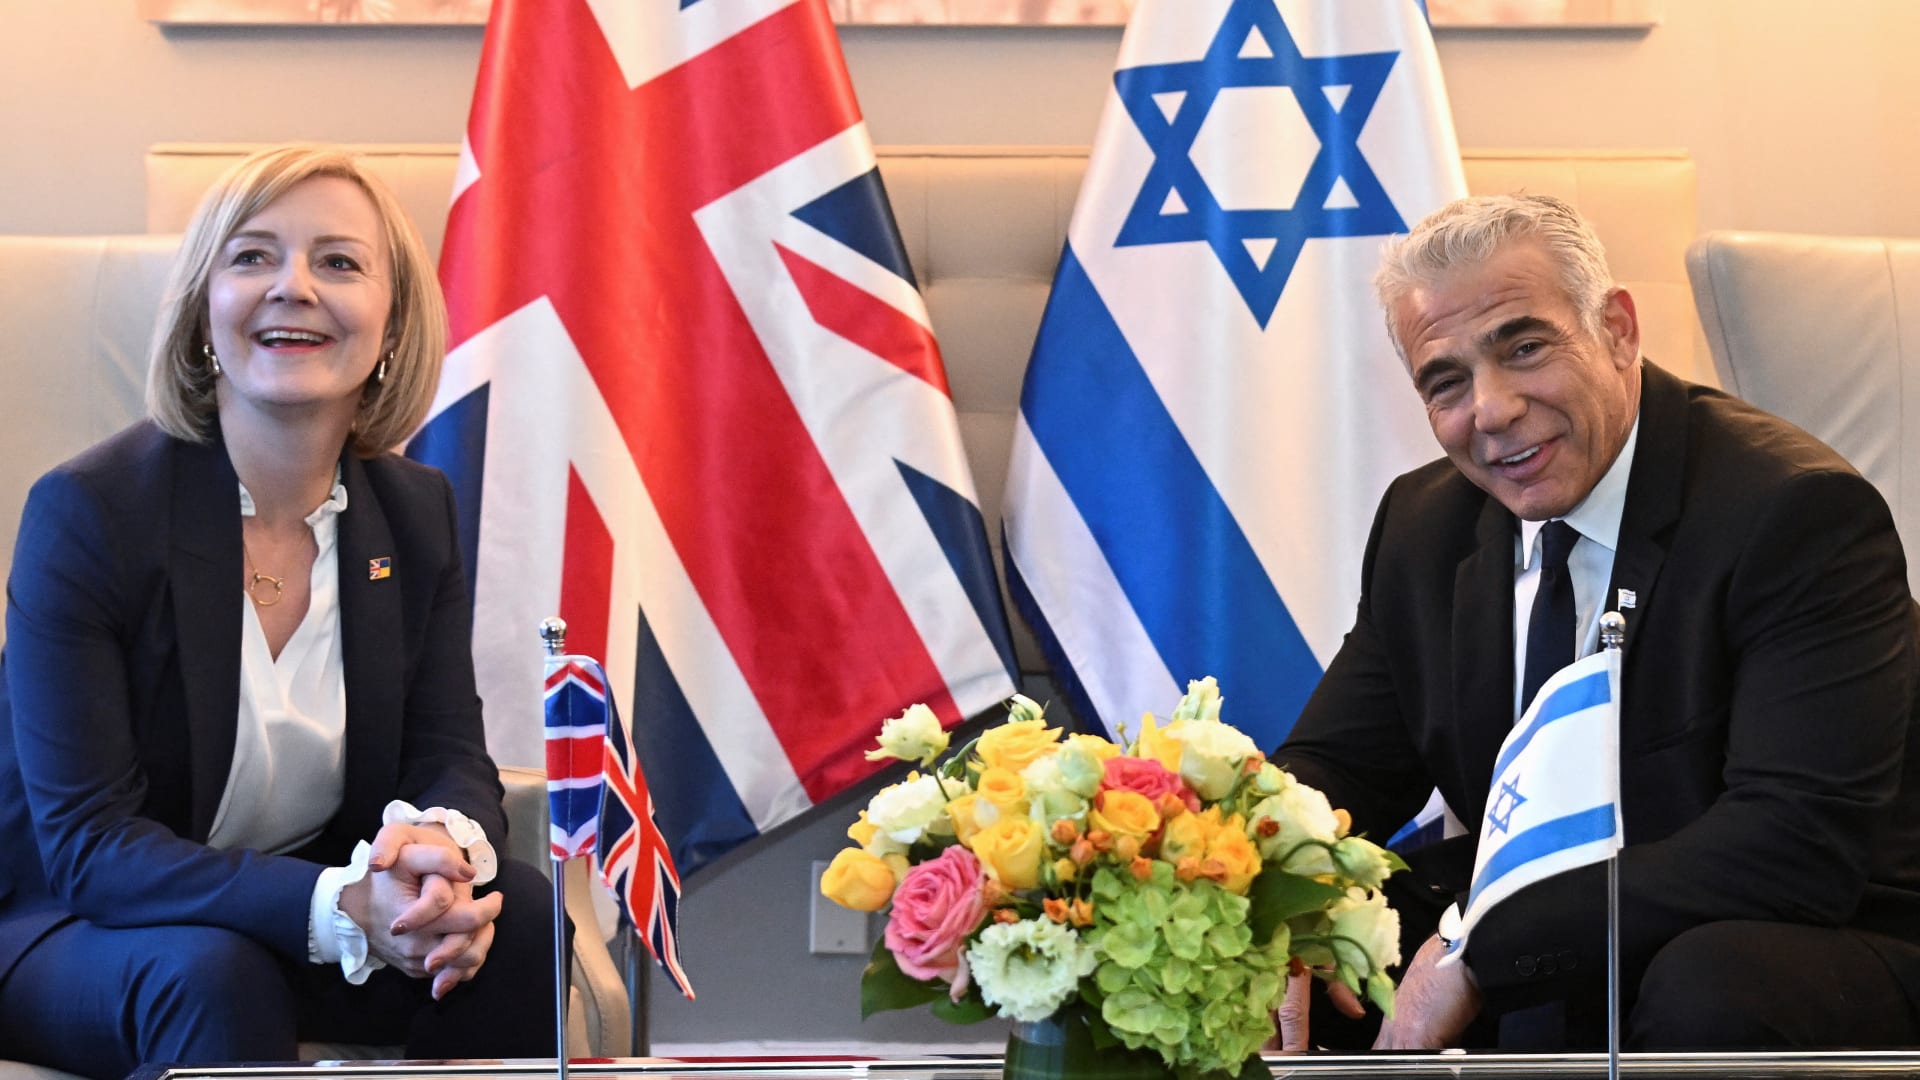 قادة مسيحيون في القدس وبريطانيا يعربون عن قلقهم من خطوة نقل السفارة البريطانية